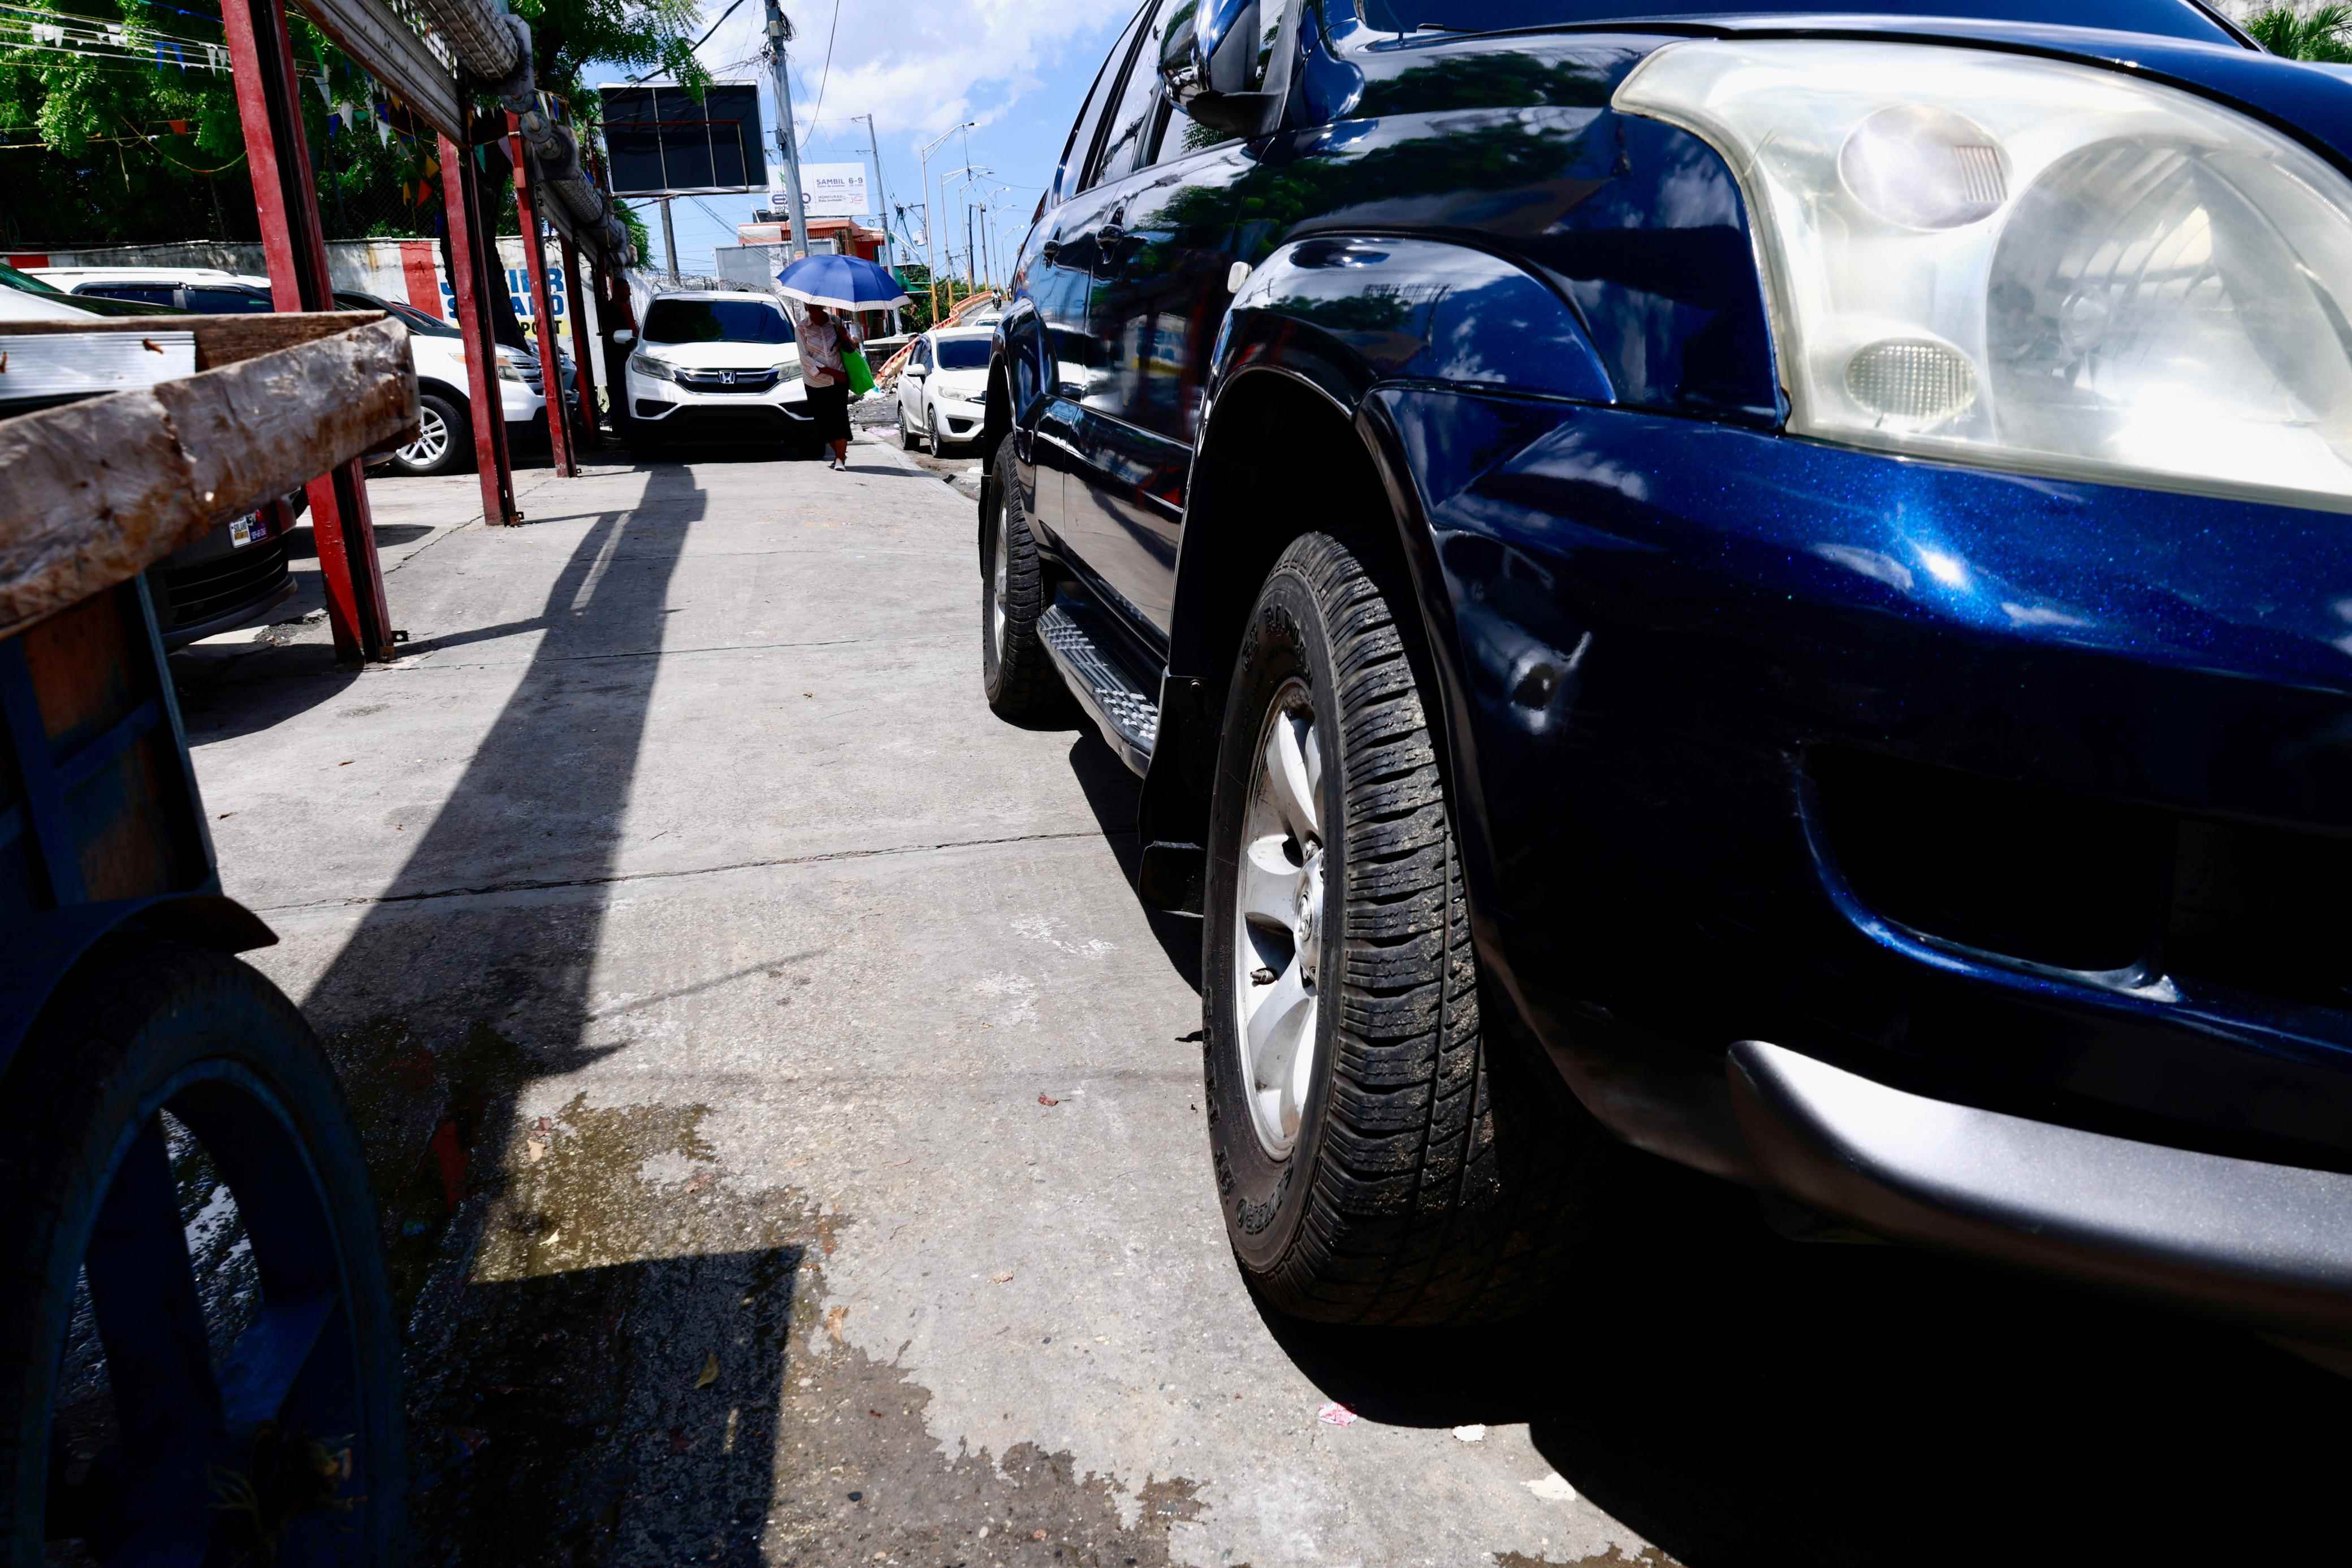 En la Avenida Expreso V Centenario también se observan vehículos estacionados en las aceras para exhibirlos al público.